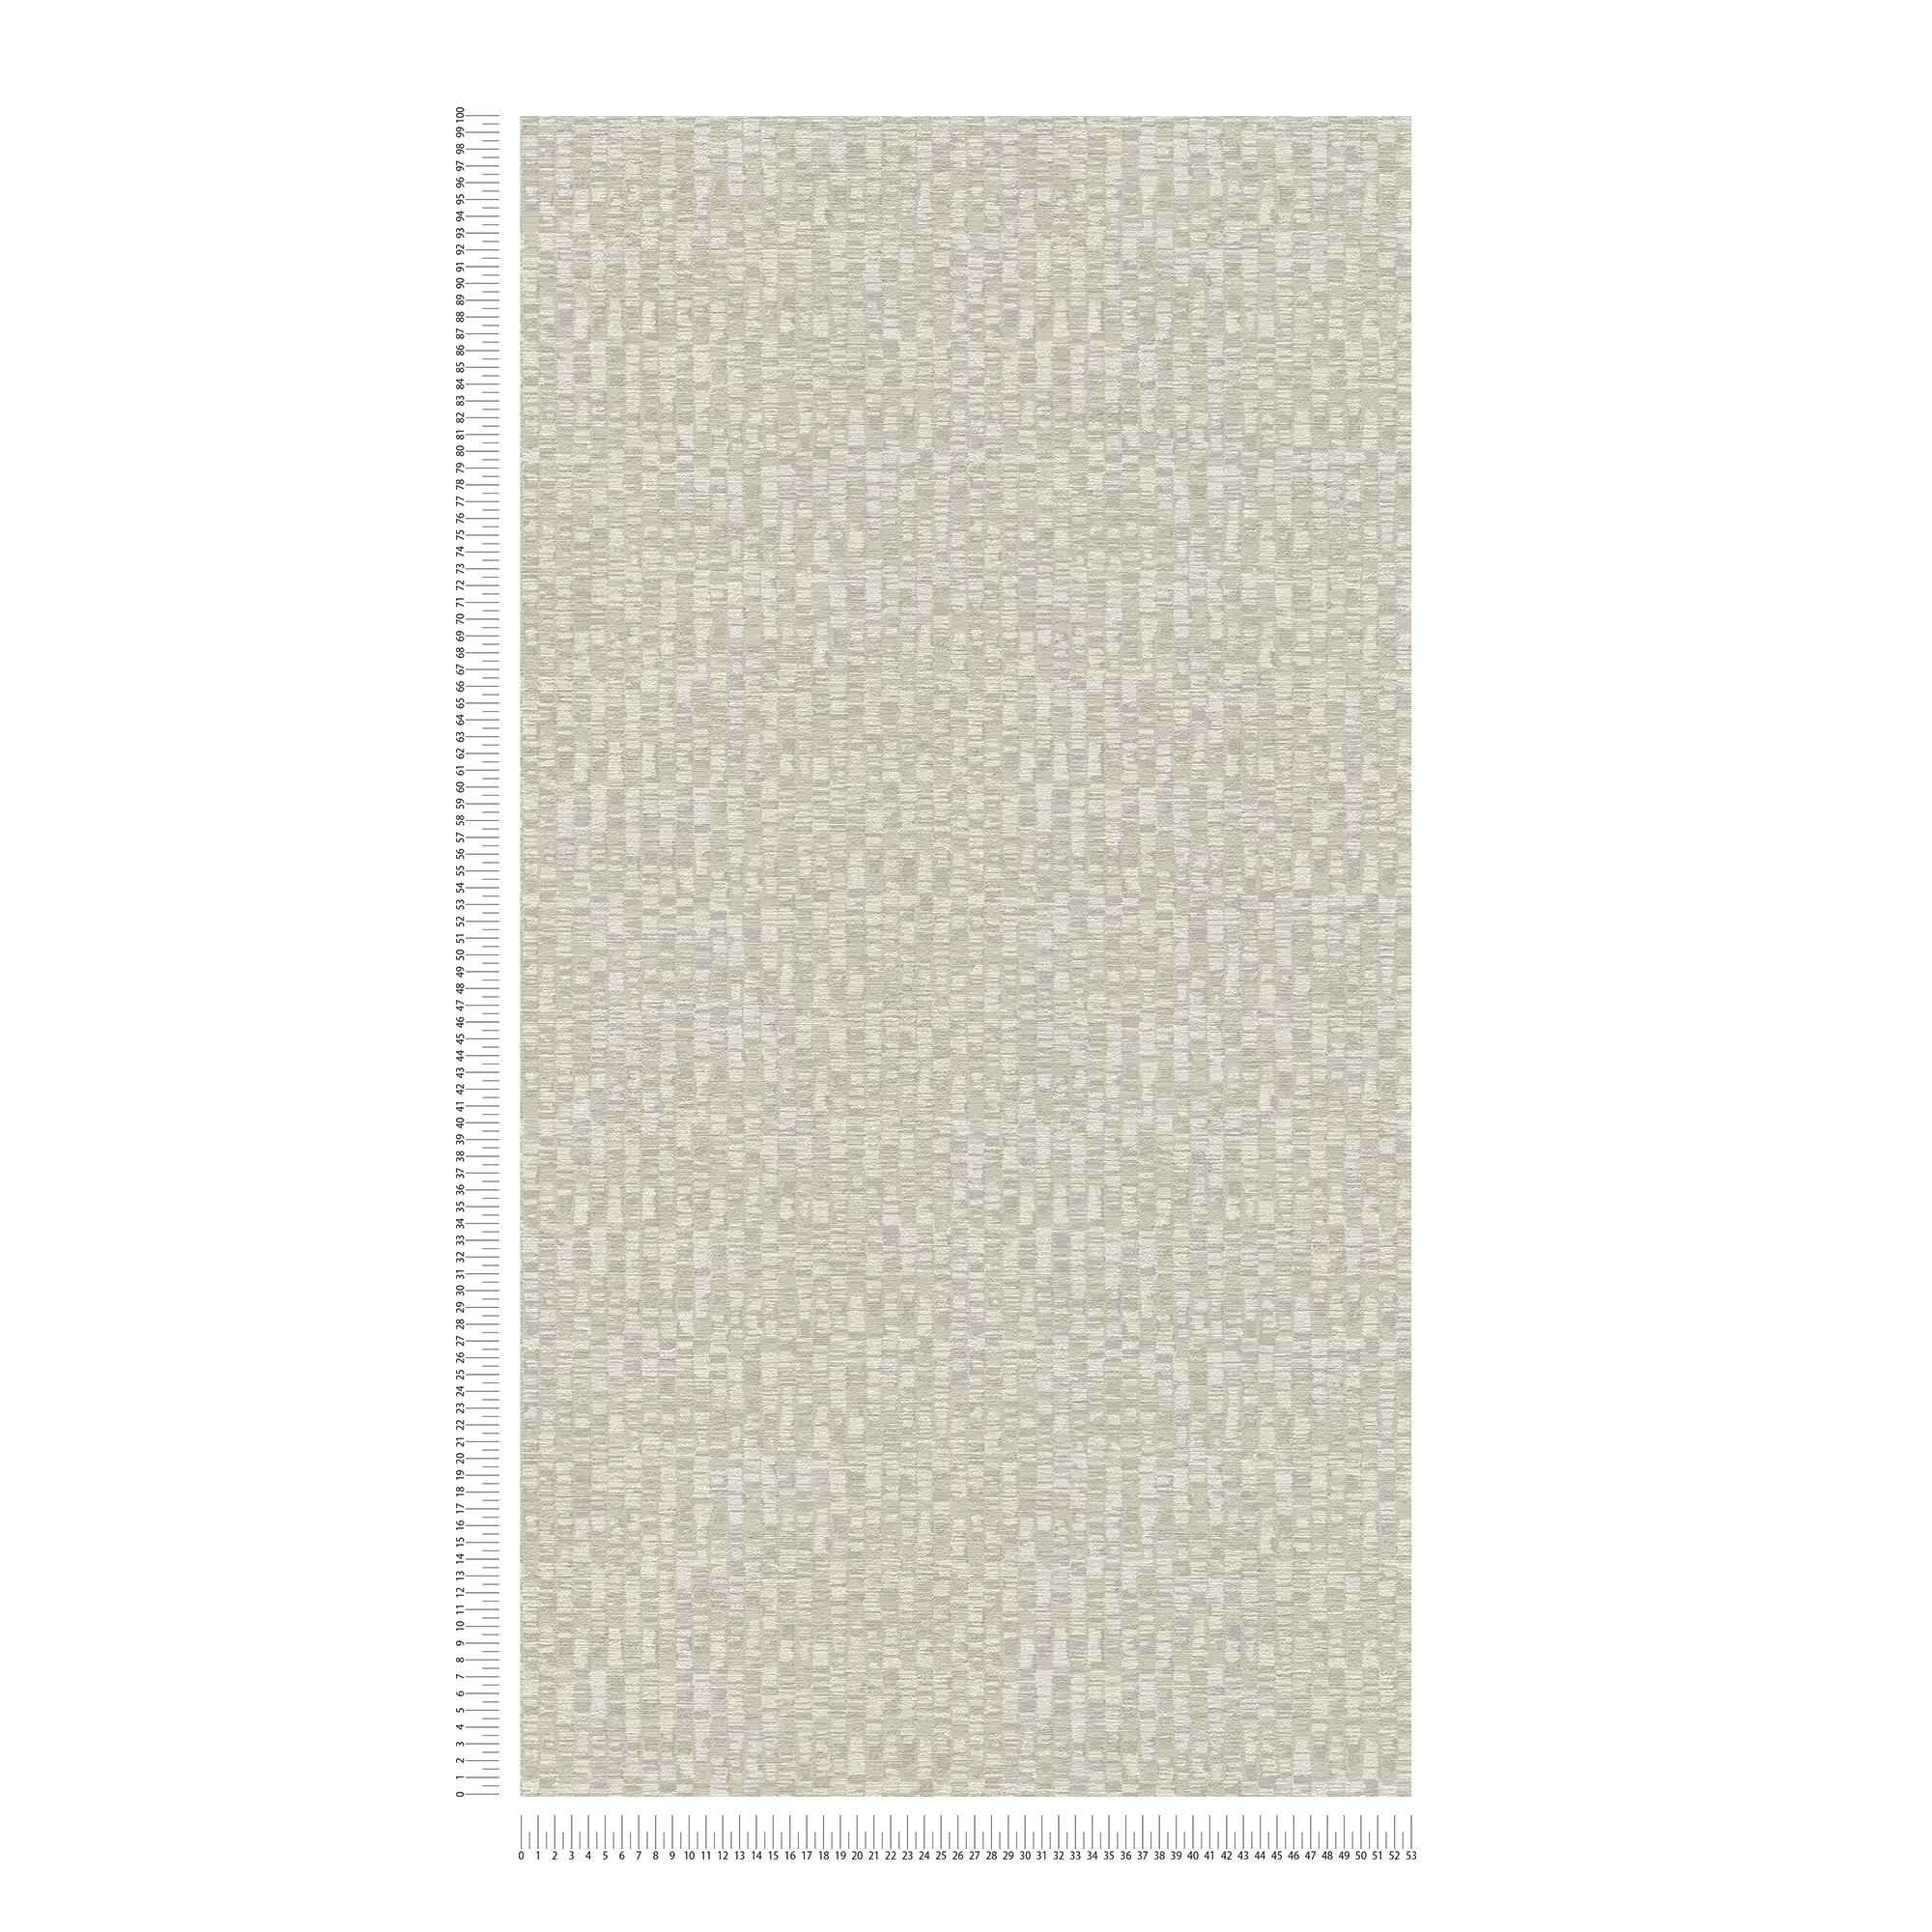             Carta da parati in tessuto non tessuto in tinta unita - grigio, bianco
        